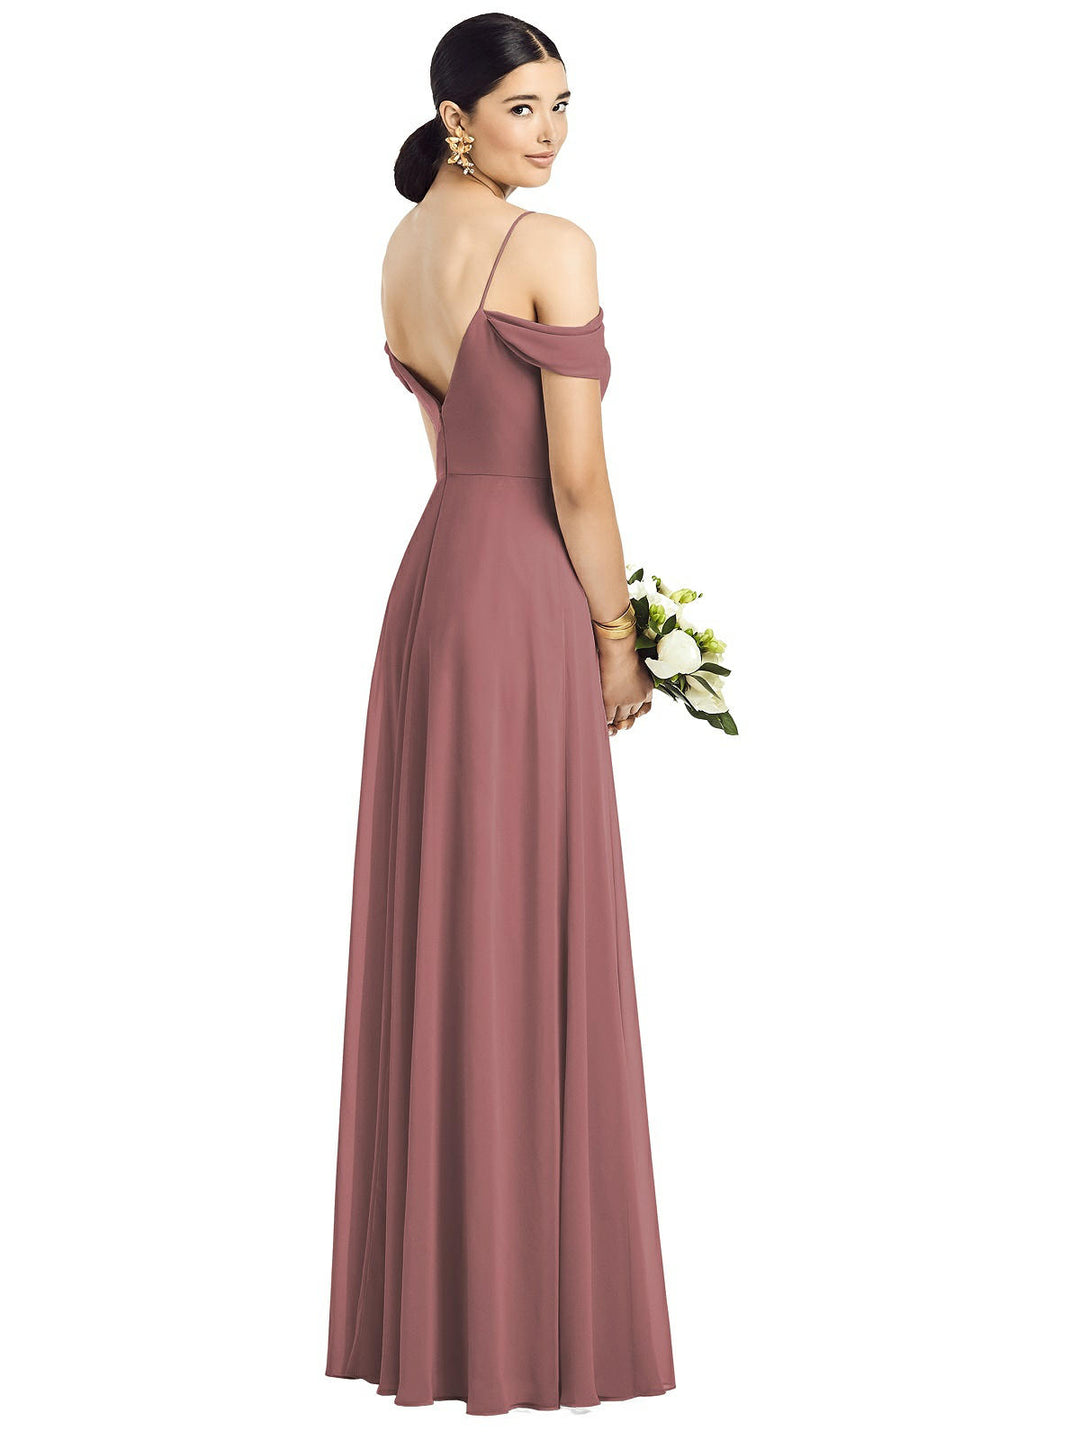 Cold-Shoulder V-Back Chiffon Maxi Dress by Dessy Style 1526 Size 12